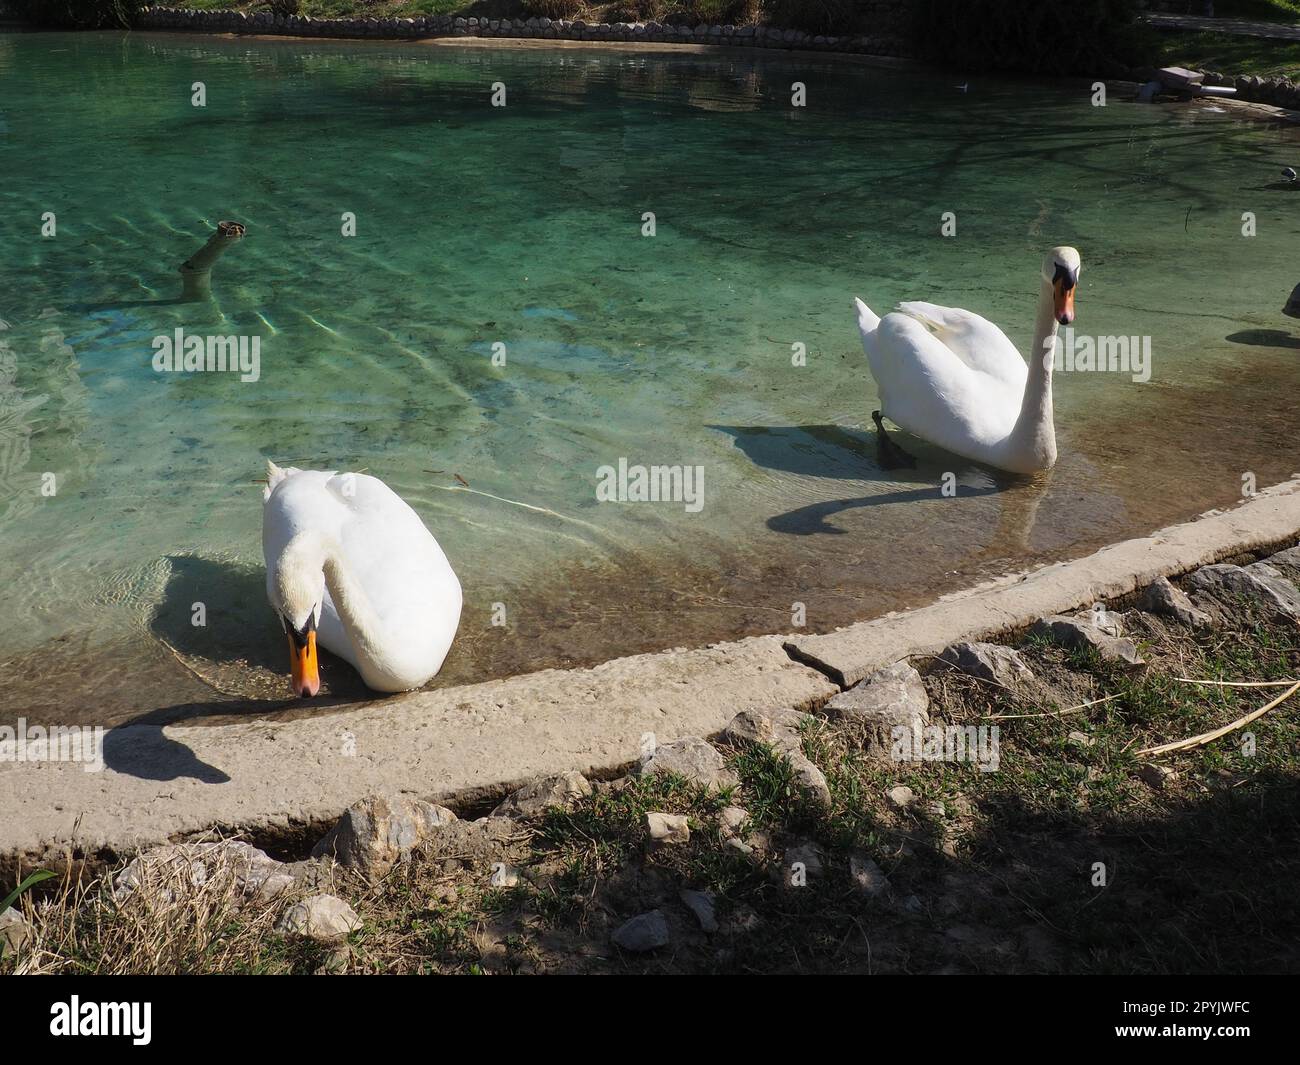 Zwei weiße Schwäne am Ufer des Reservoirs. Vögel am Wasser putzen ihre Federn. Stanisici, Bijelina, Bosnien und Herzegowina, ein Zoo in einem Ethno-Dorf. Die Fauna Europas. Stockfoto